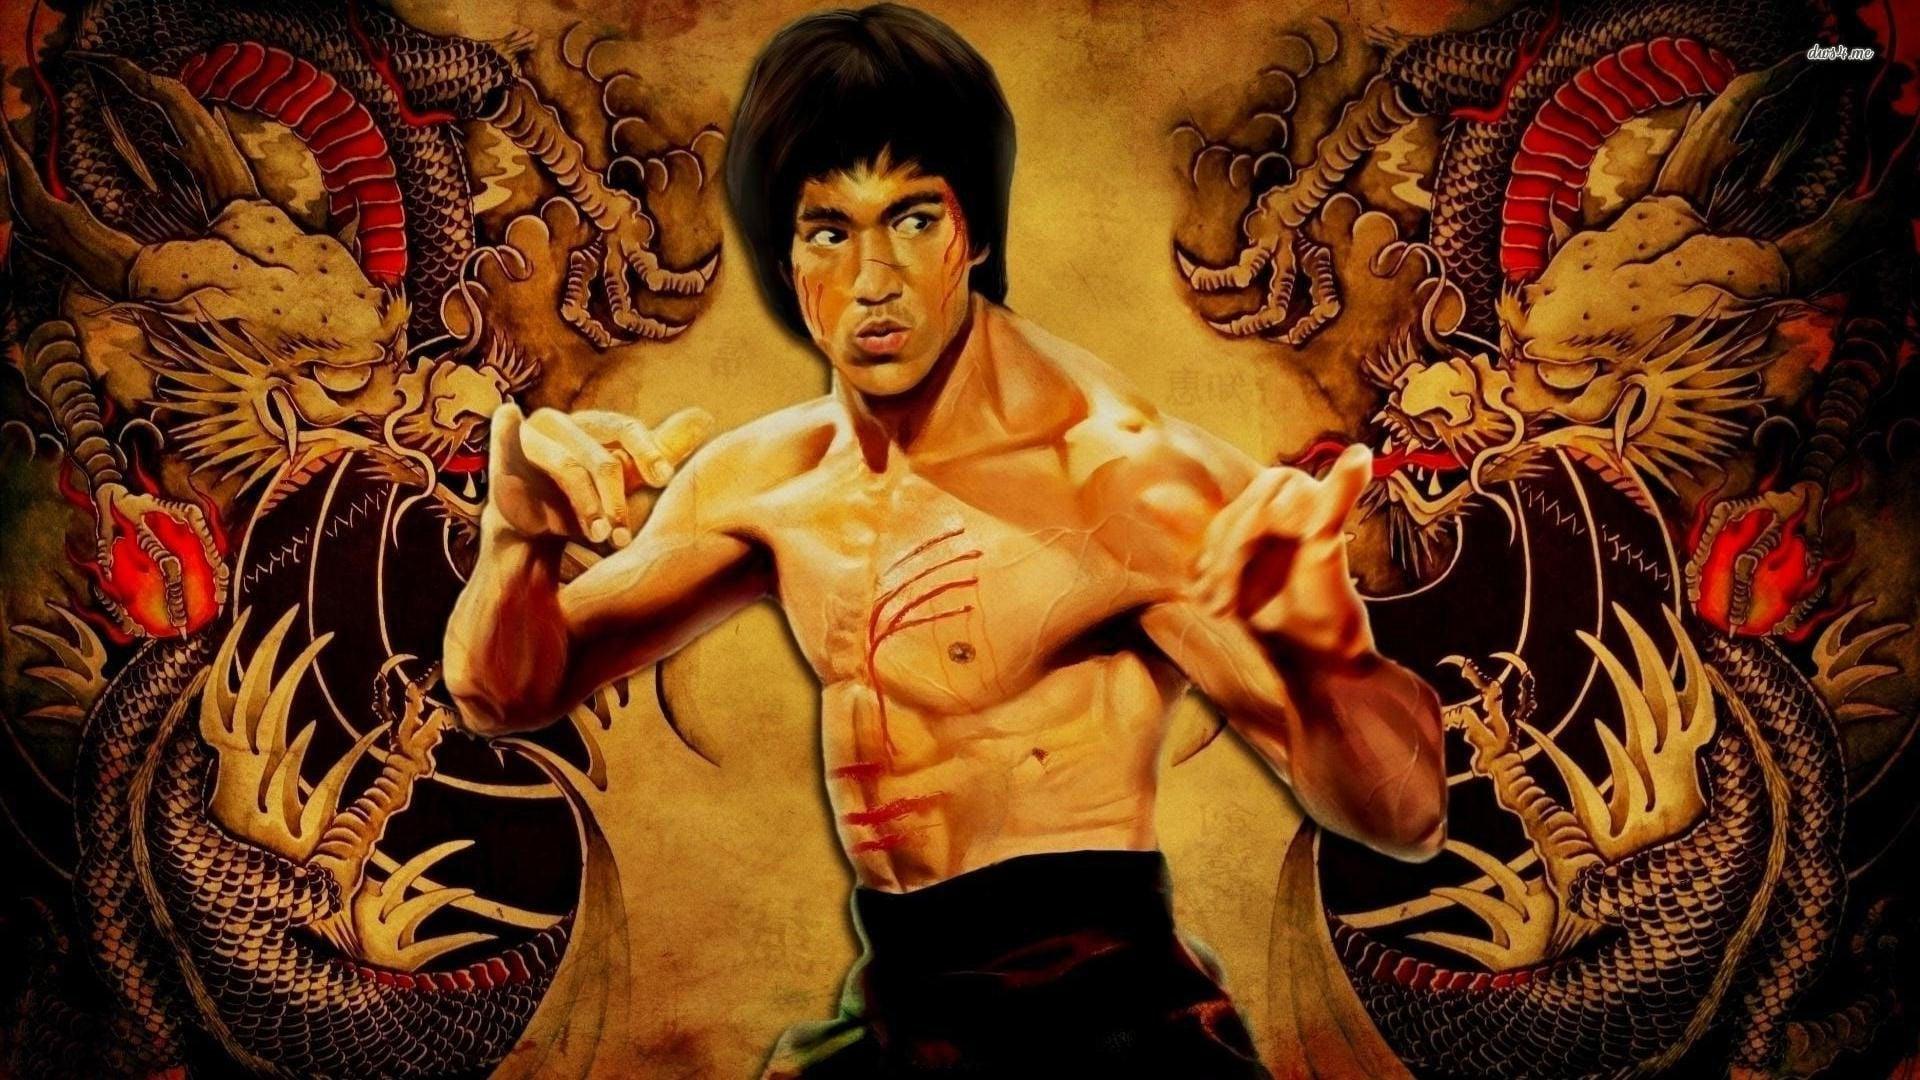 Bruce Lee: The Legend backdrop